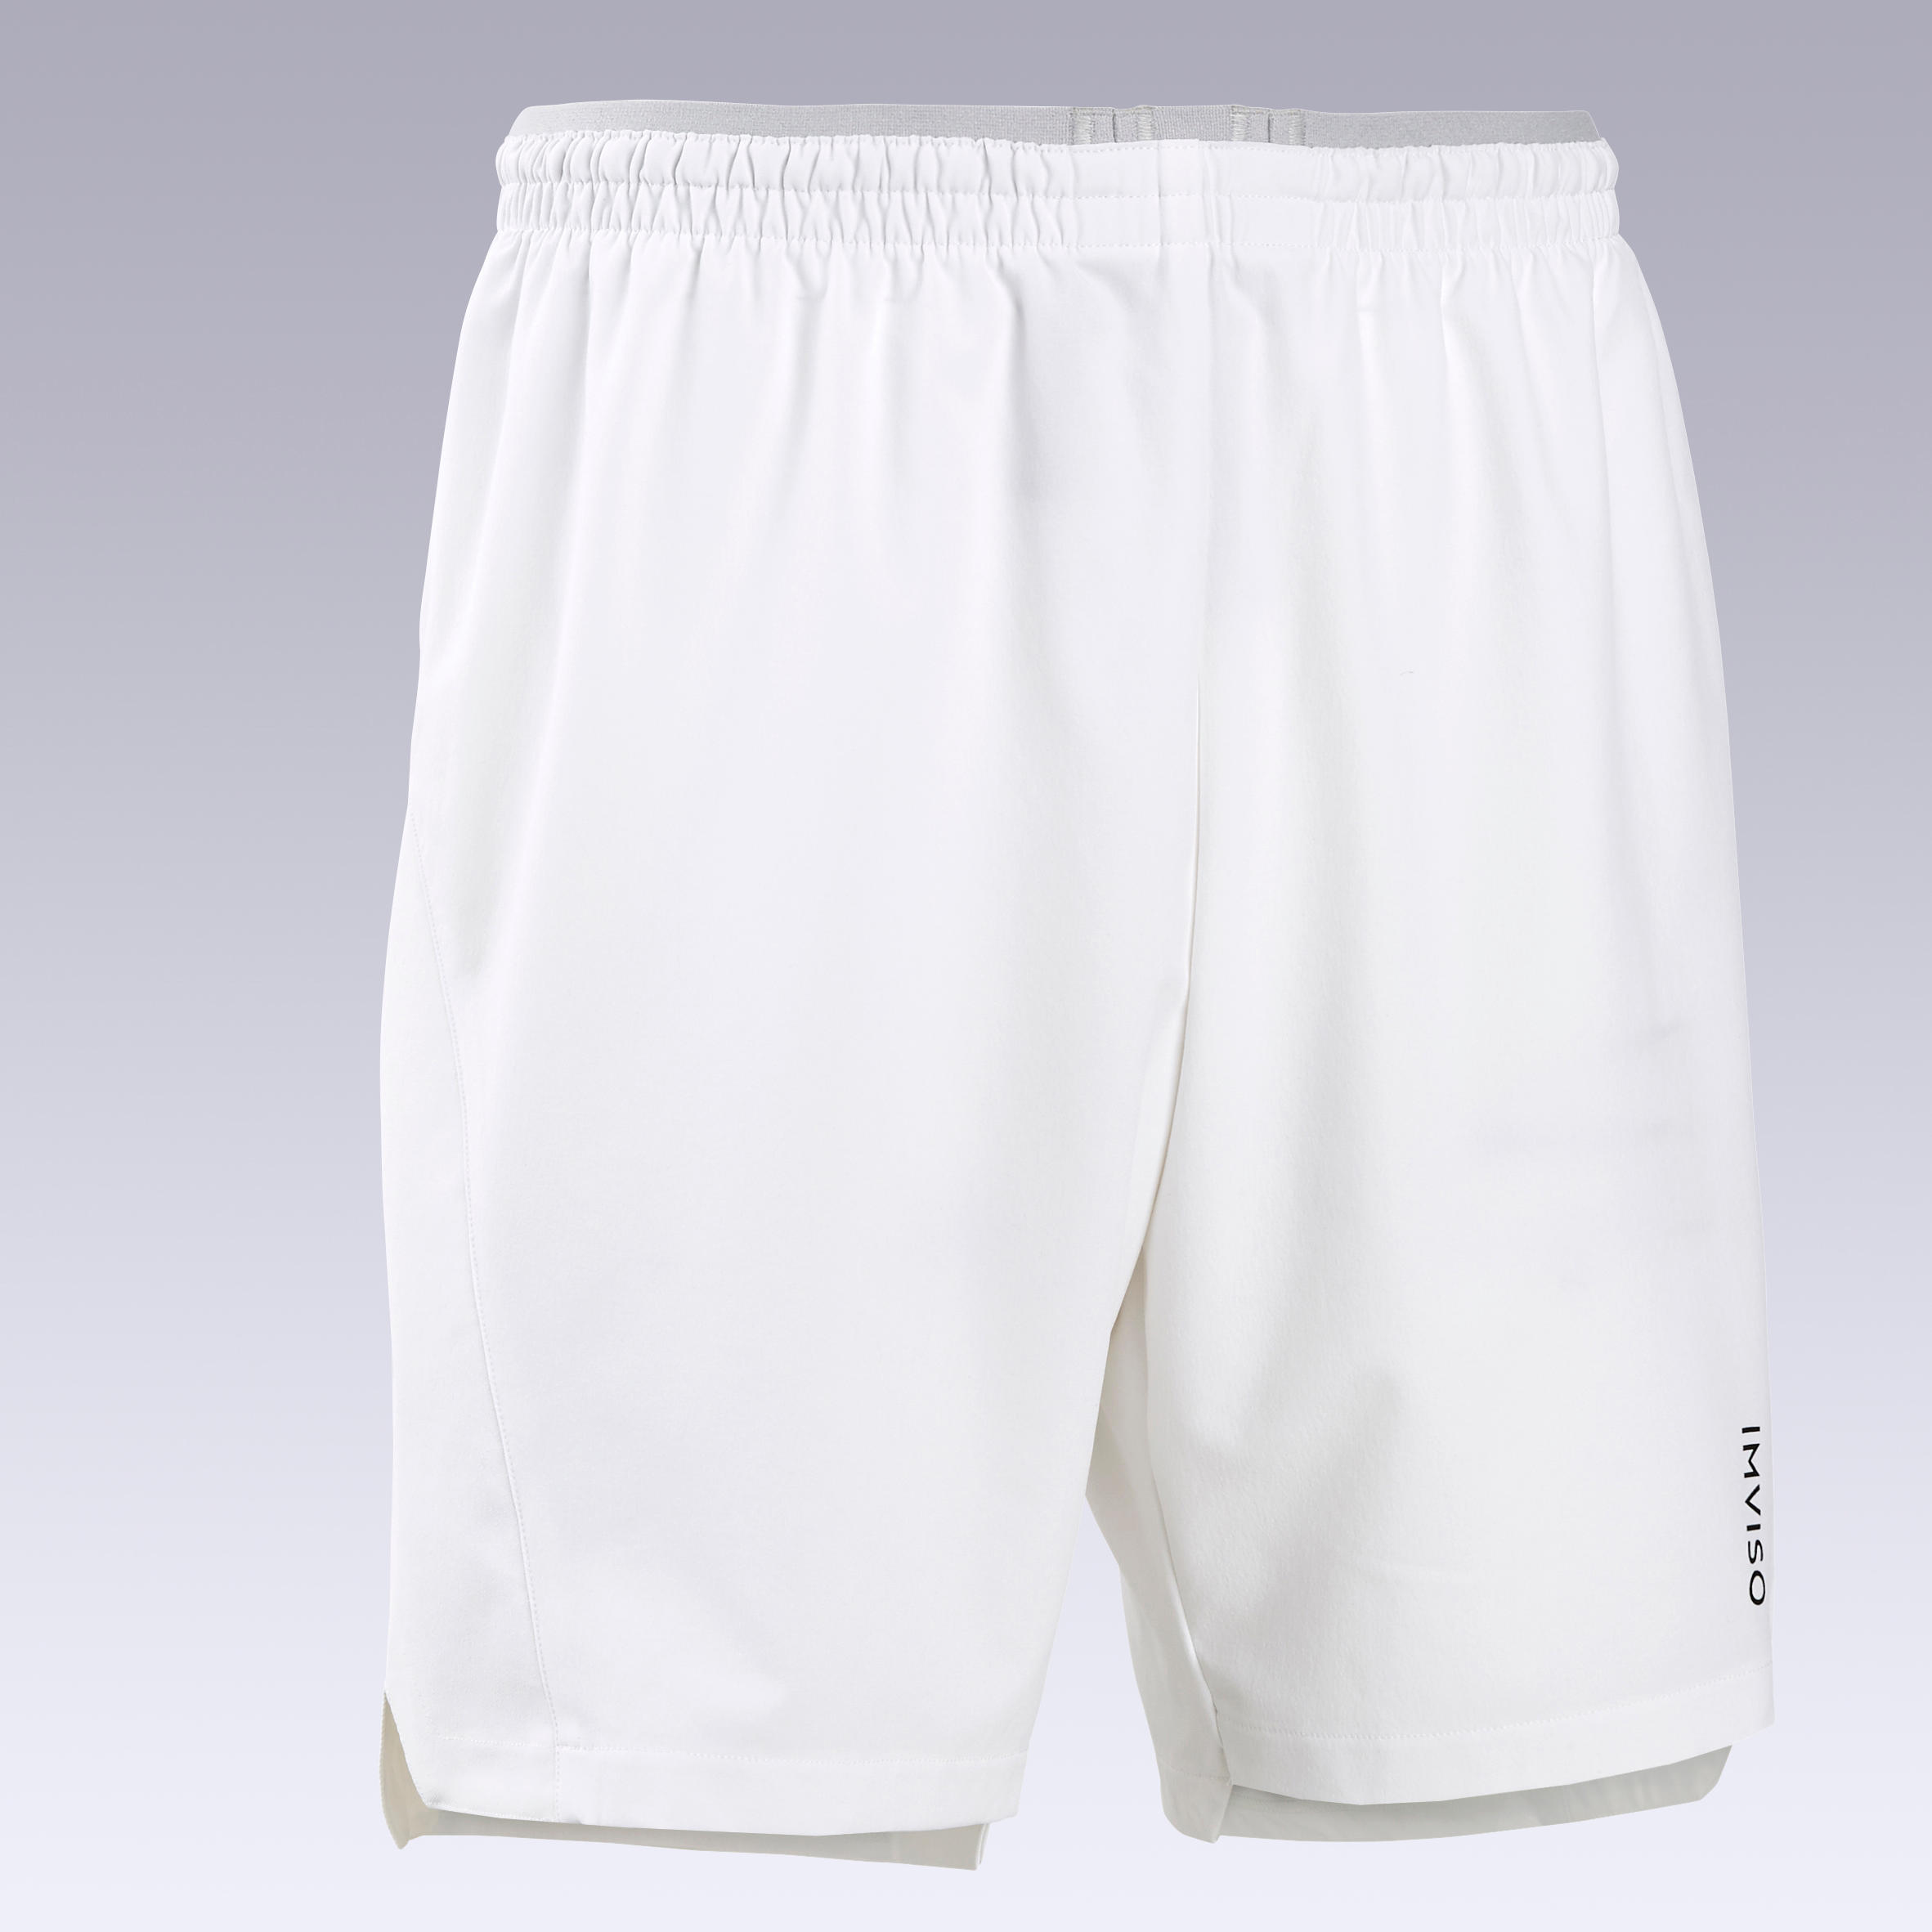 Men's Futsal Shorts - White 7/7